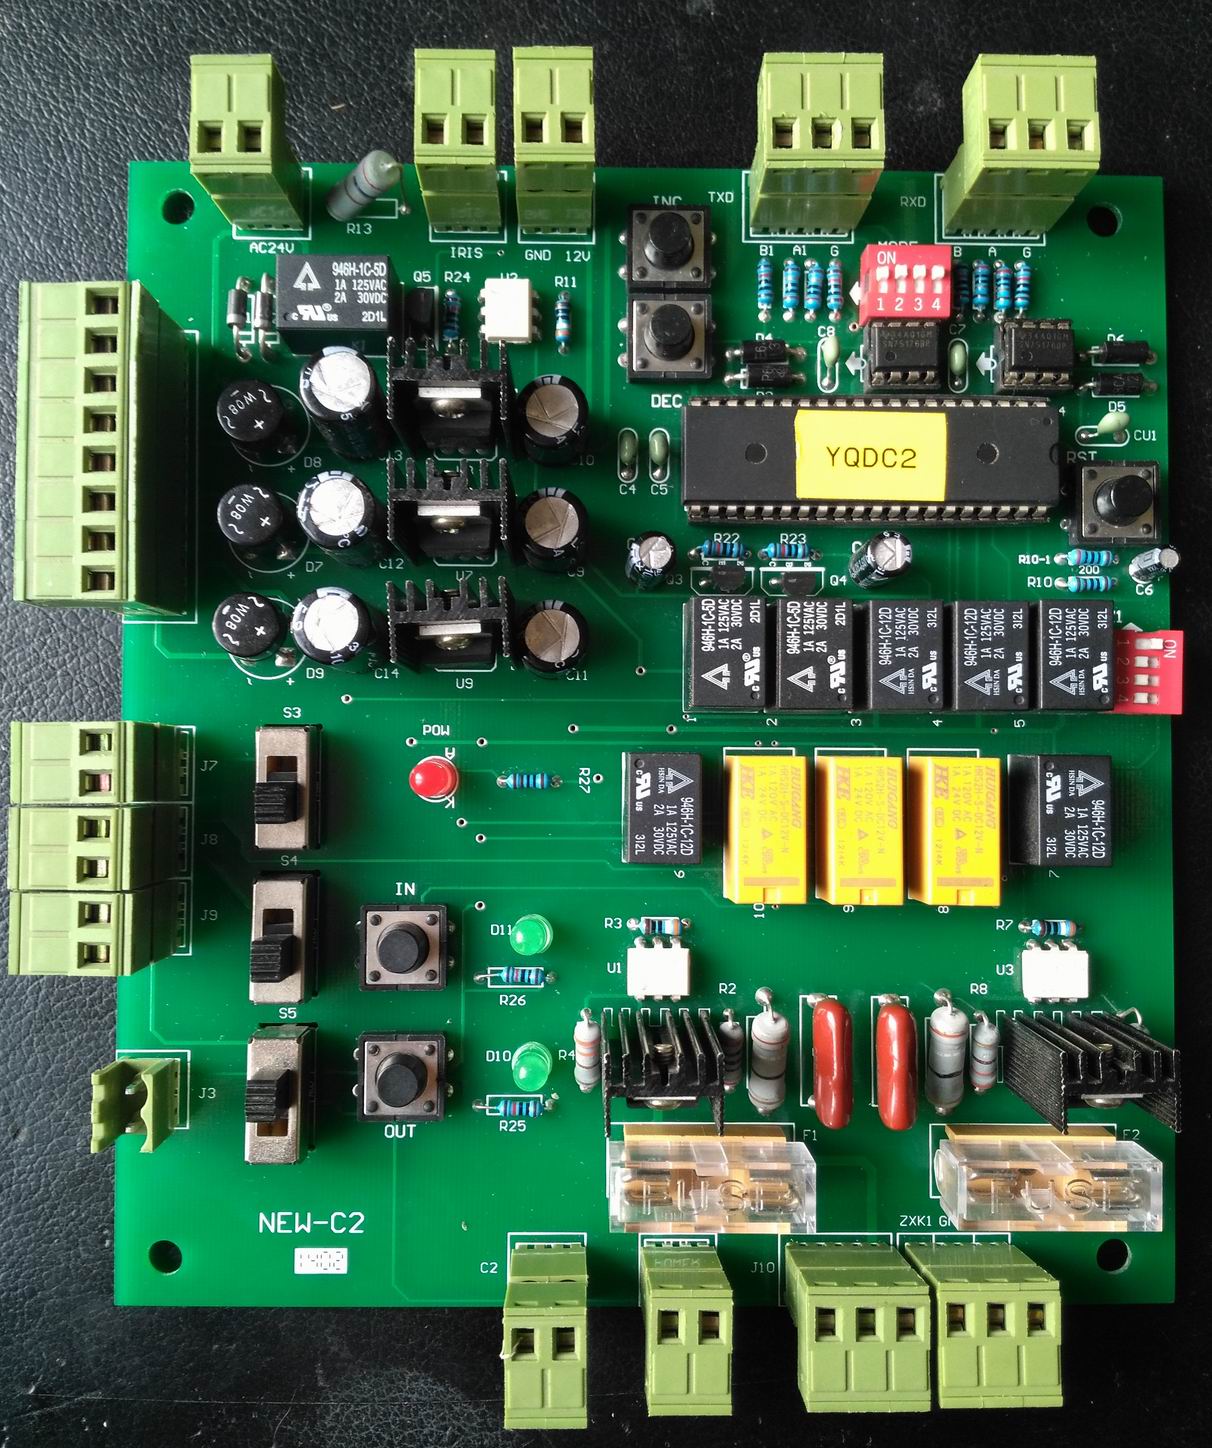 mạch điều khiển camera GS-QD-C2; YD03-2012, camera decoding control board NEW-C2